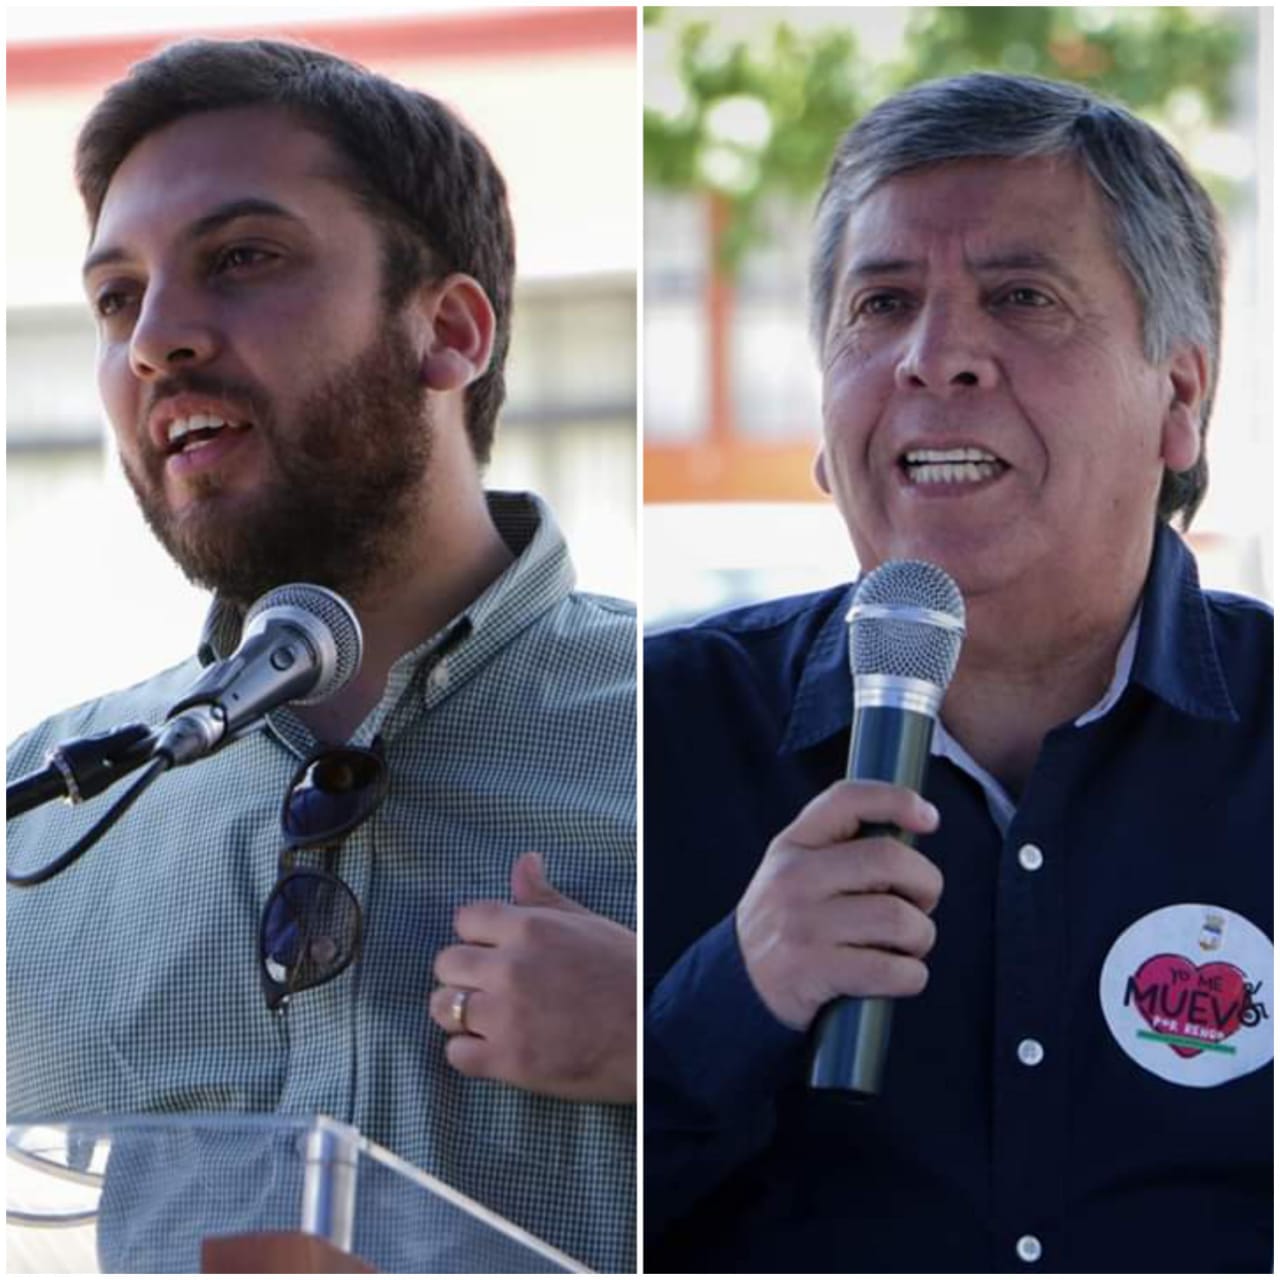 Alcalde Carlos Soto y Diputado Raúl Soto insisten en cuarentena para Rengo